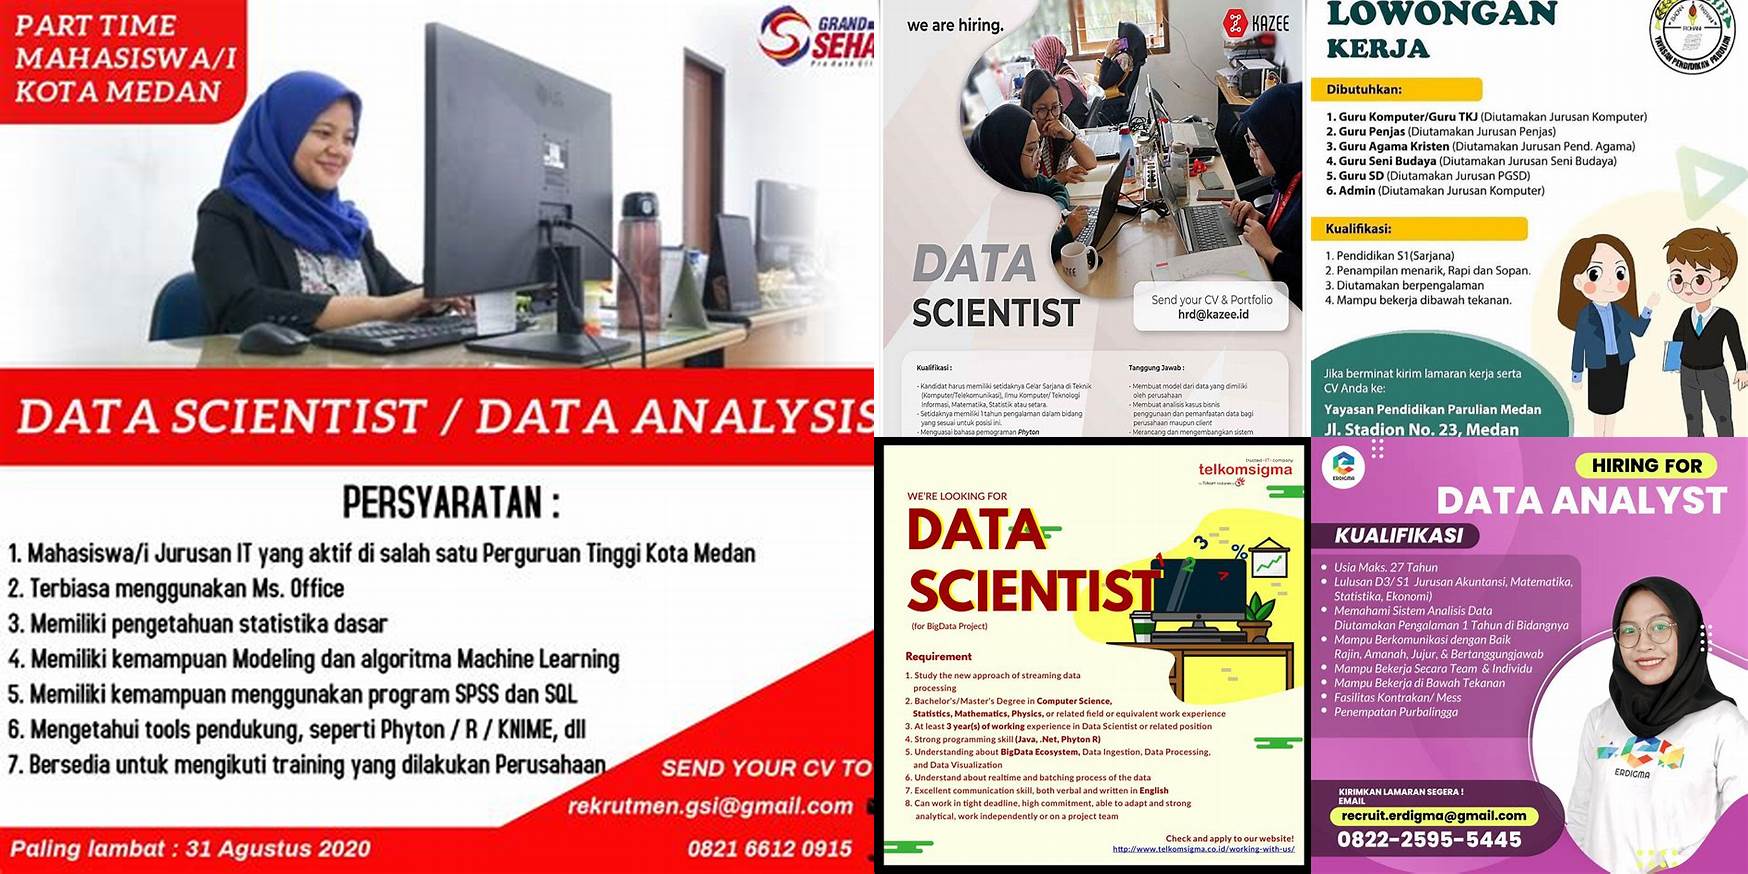 lowongan kerja data scientist Medan